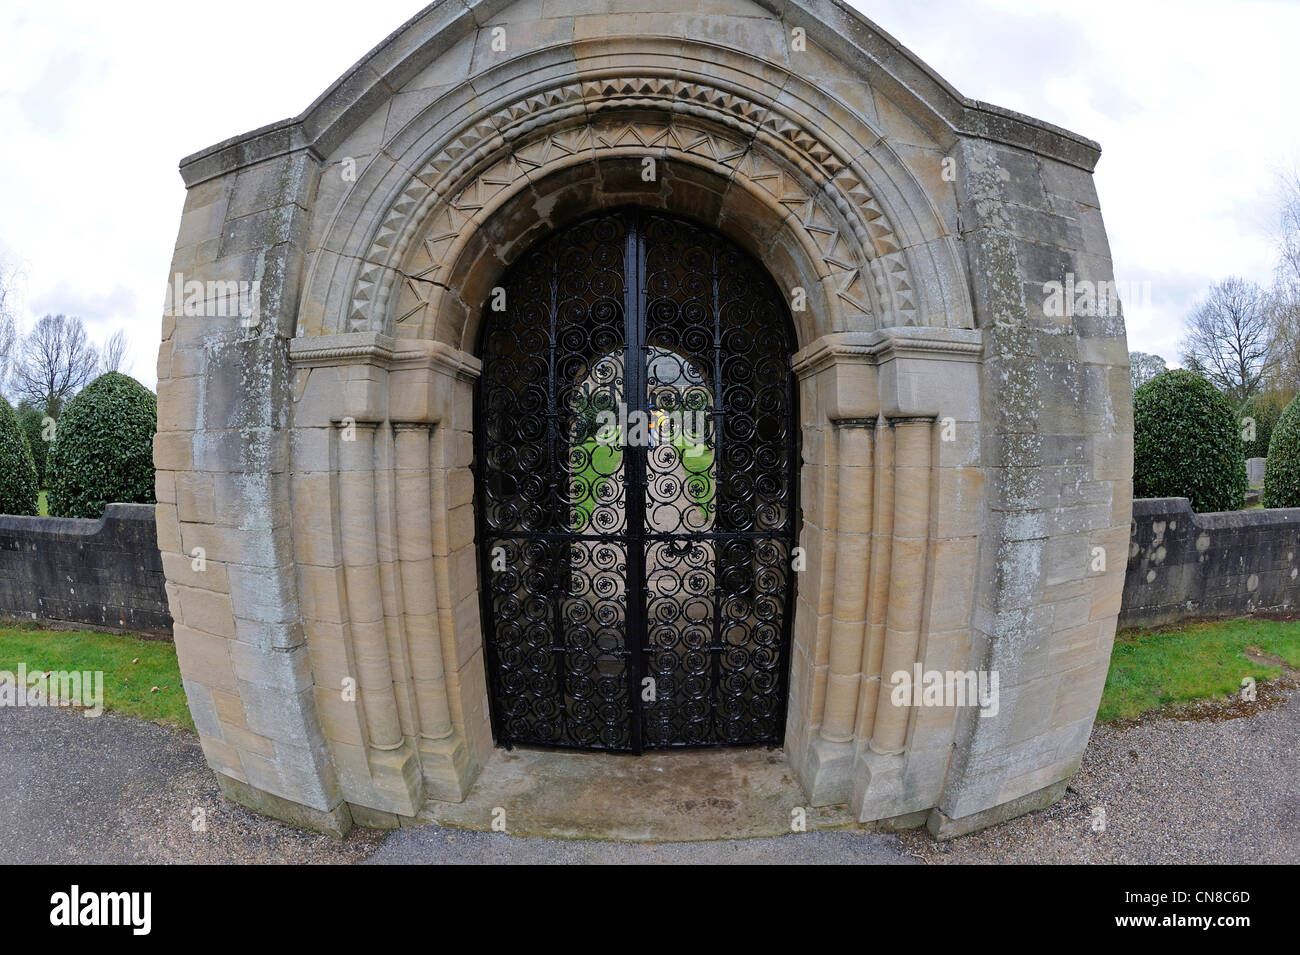 Reich verzierten schmiedeeisernen Toren und detaillierte Stein geschnitzte Torbogen in die St. Winifed Kirche in Holbeck, Nottinghamshire, England, uk. Stockfoto